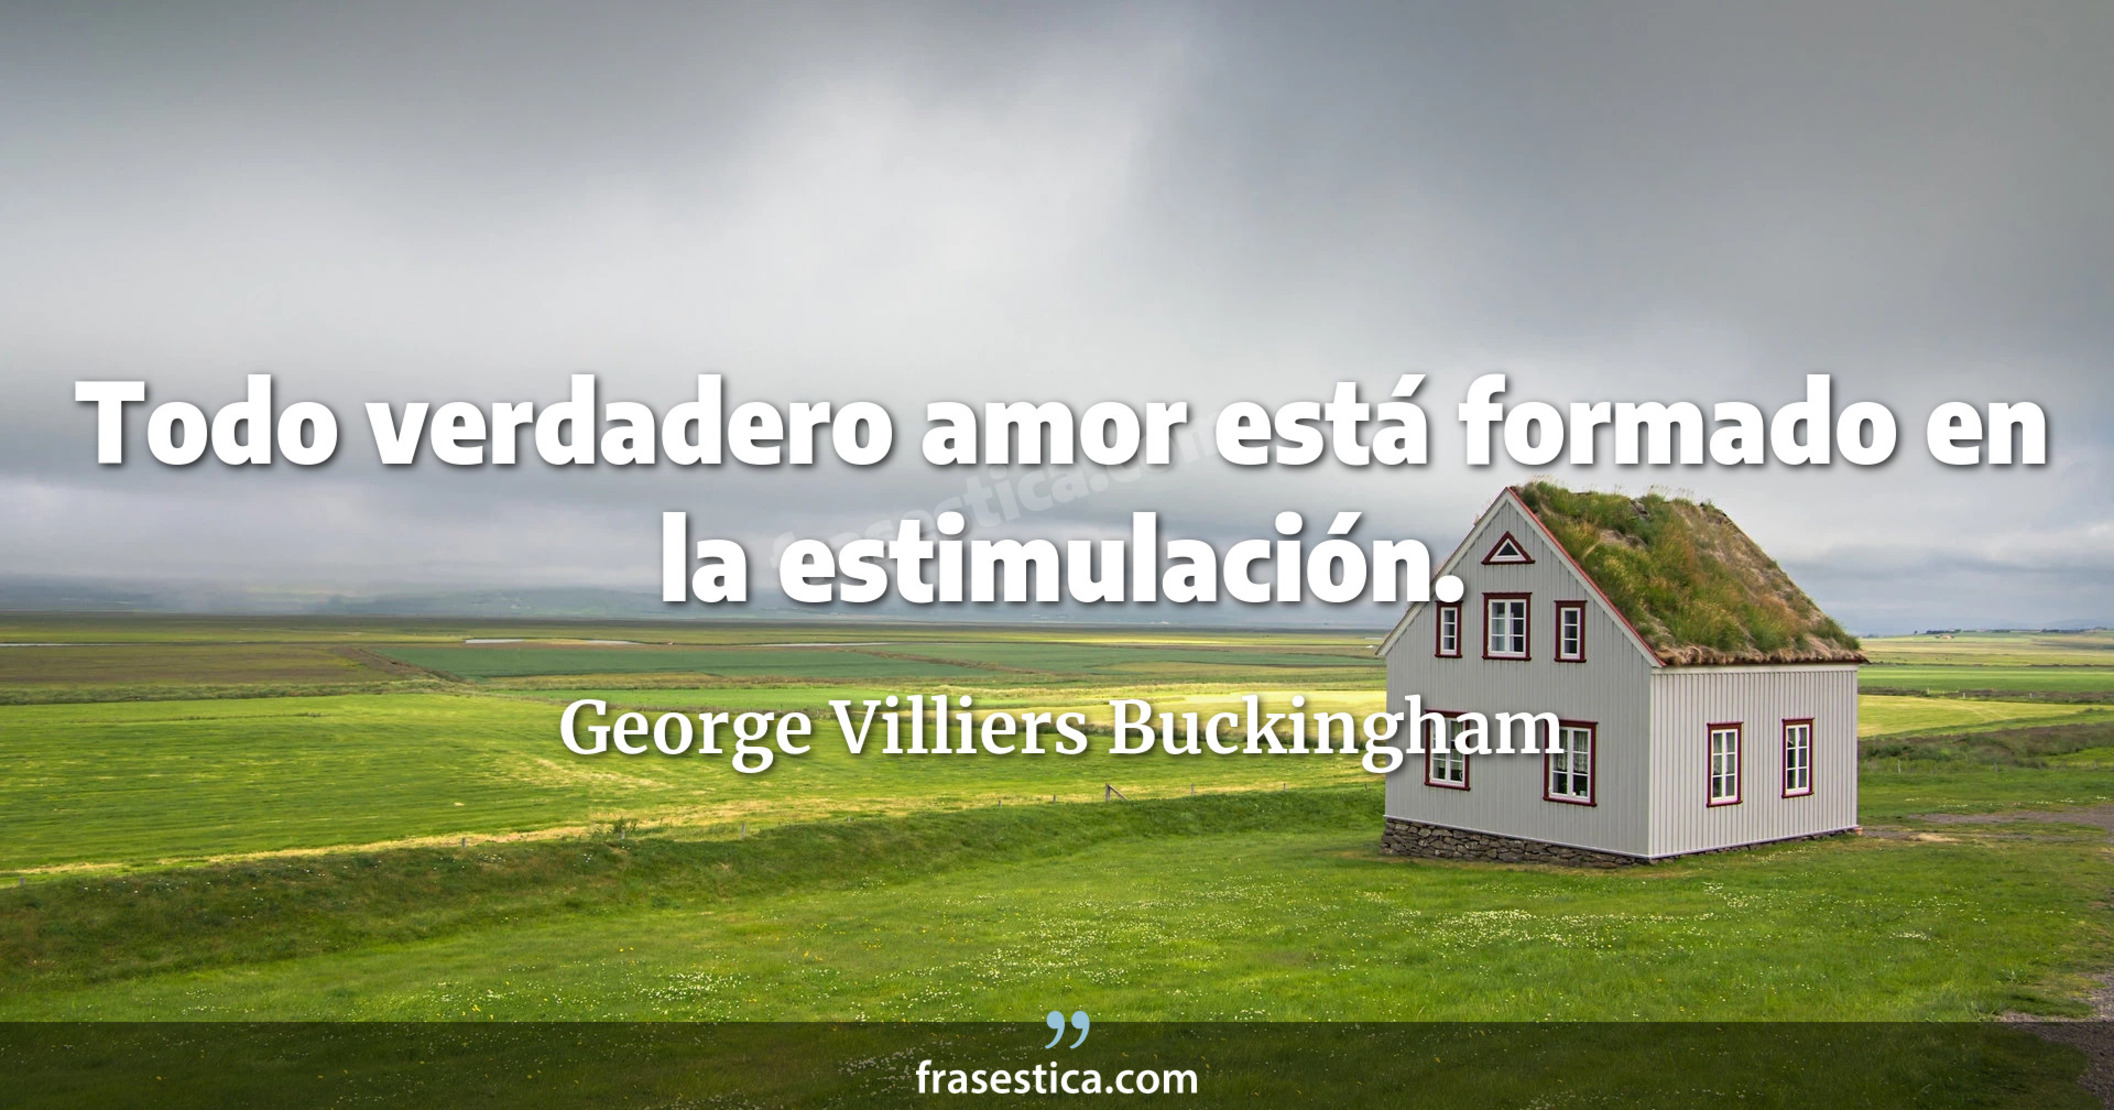 Todo verdadero amor está formado en la estimulación. - George Villiers Buckingham